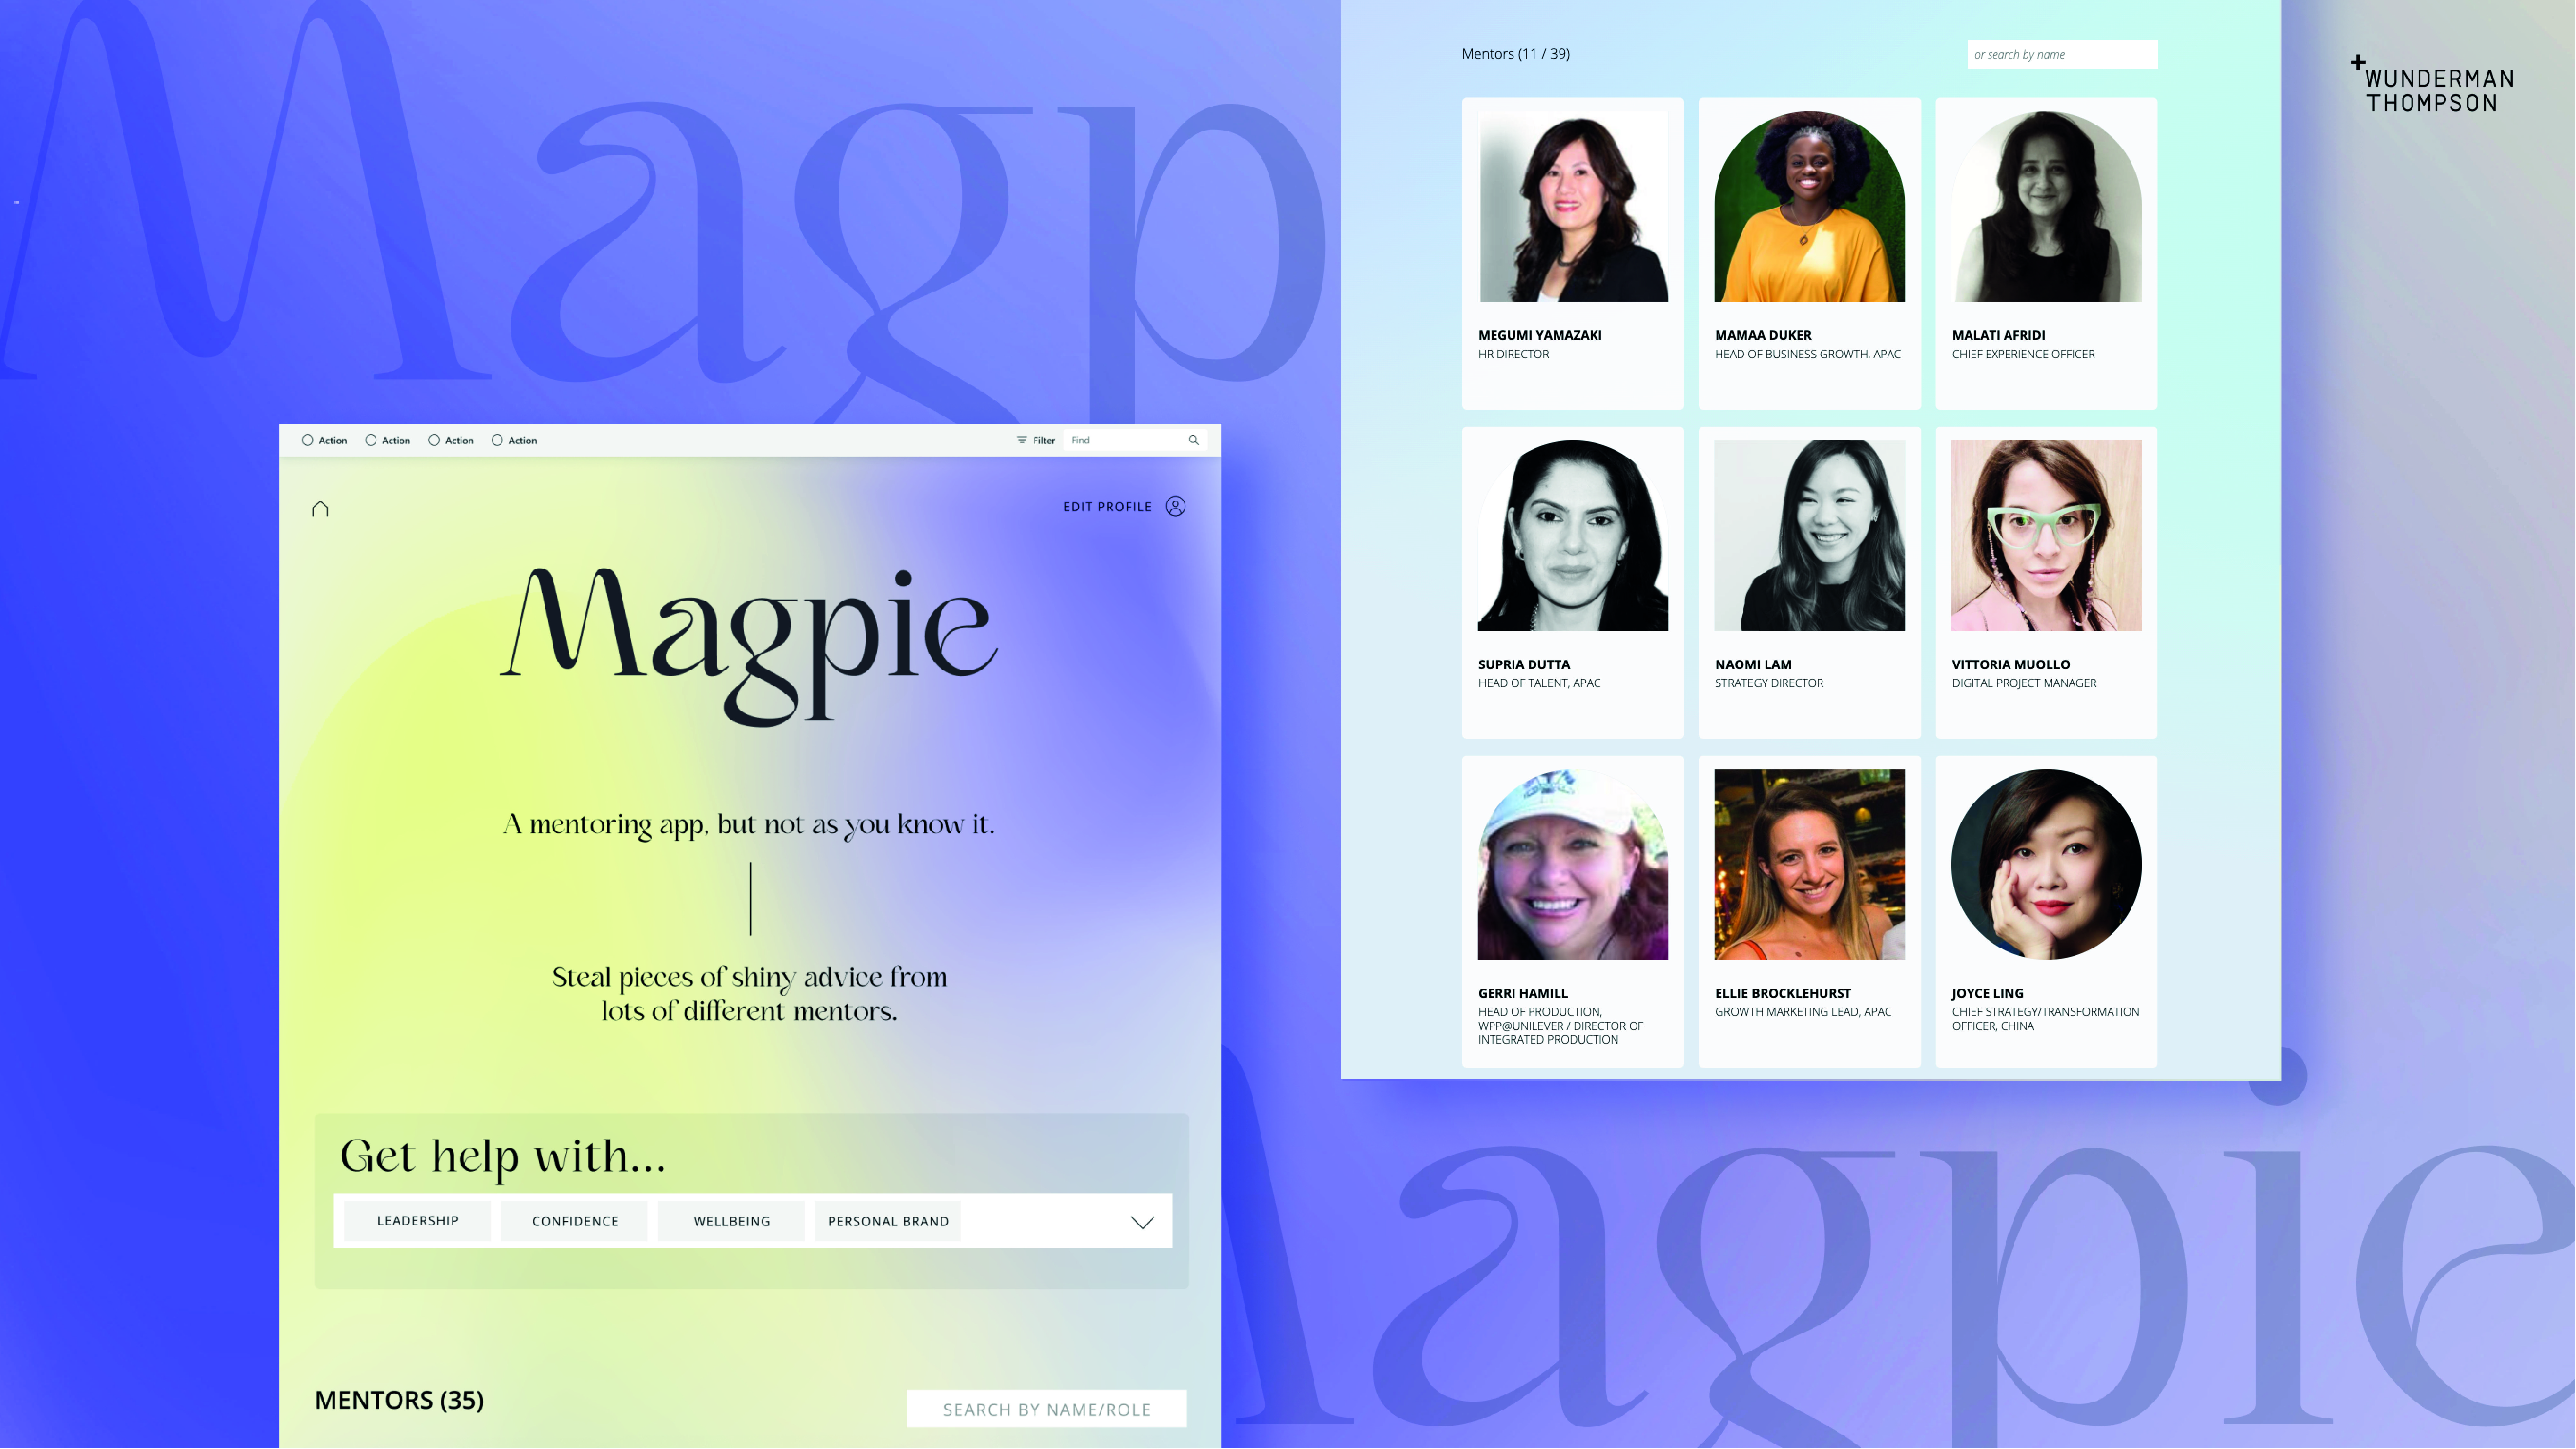 WT Magpie app_APAC[46] (1)